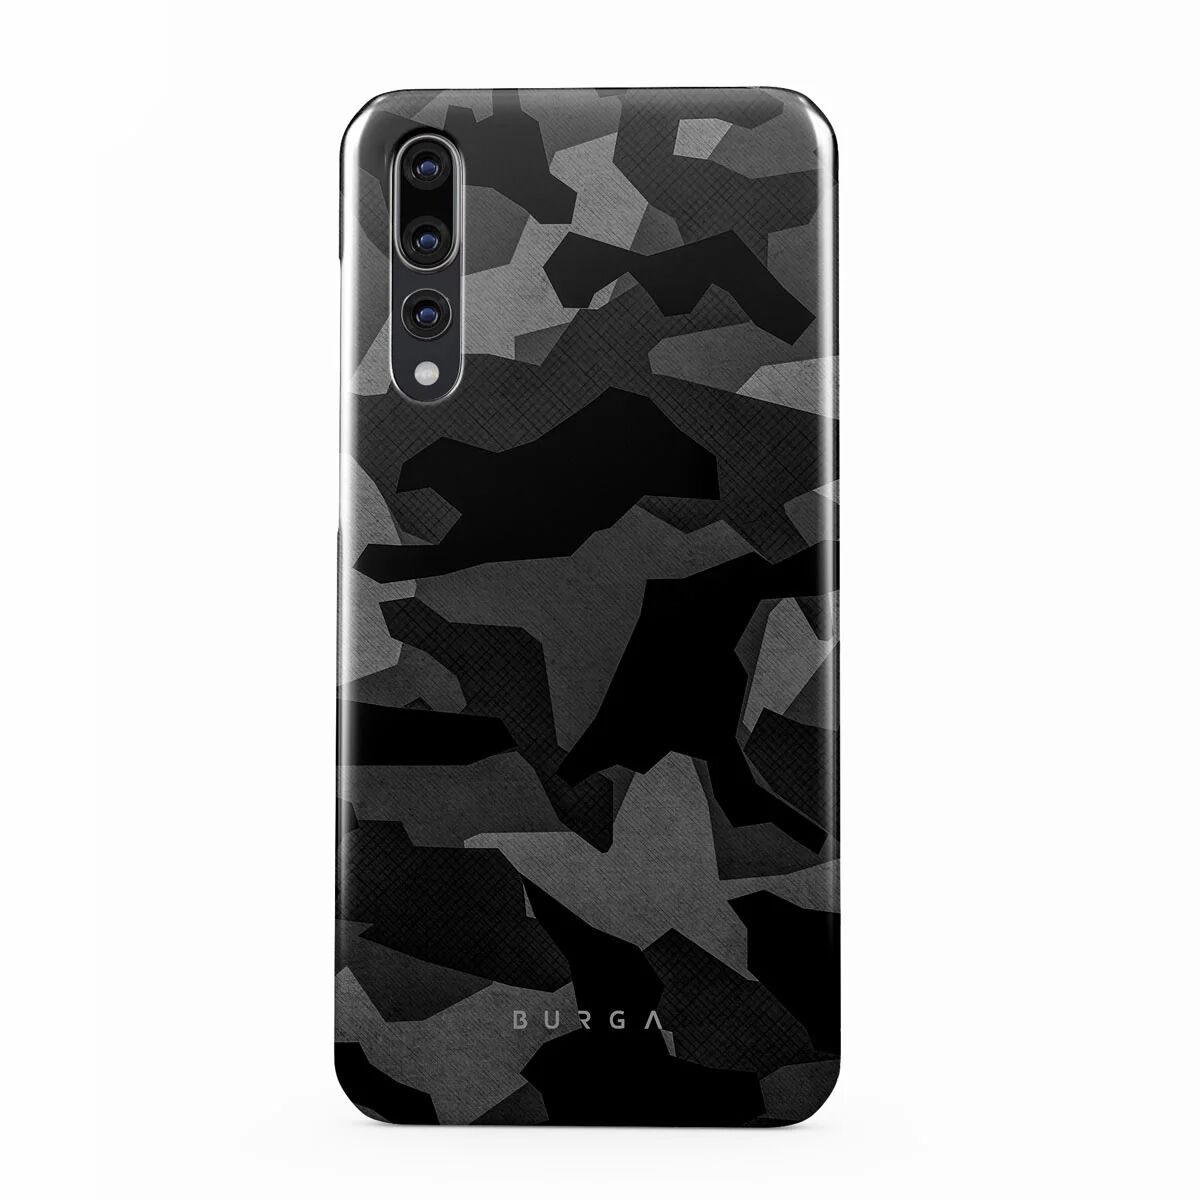 BURGA Night Black Camouflage - Huawei P20 Case